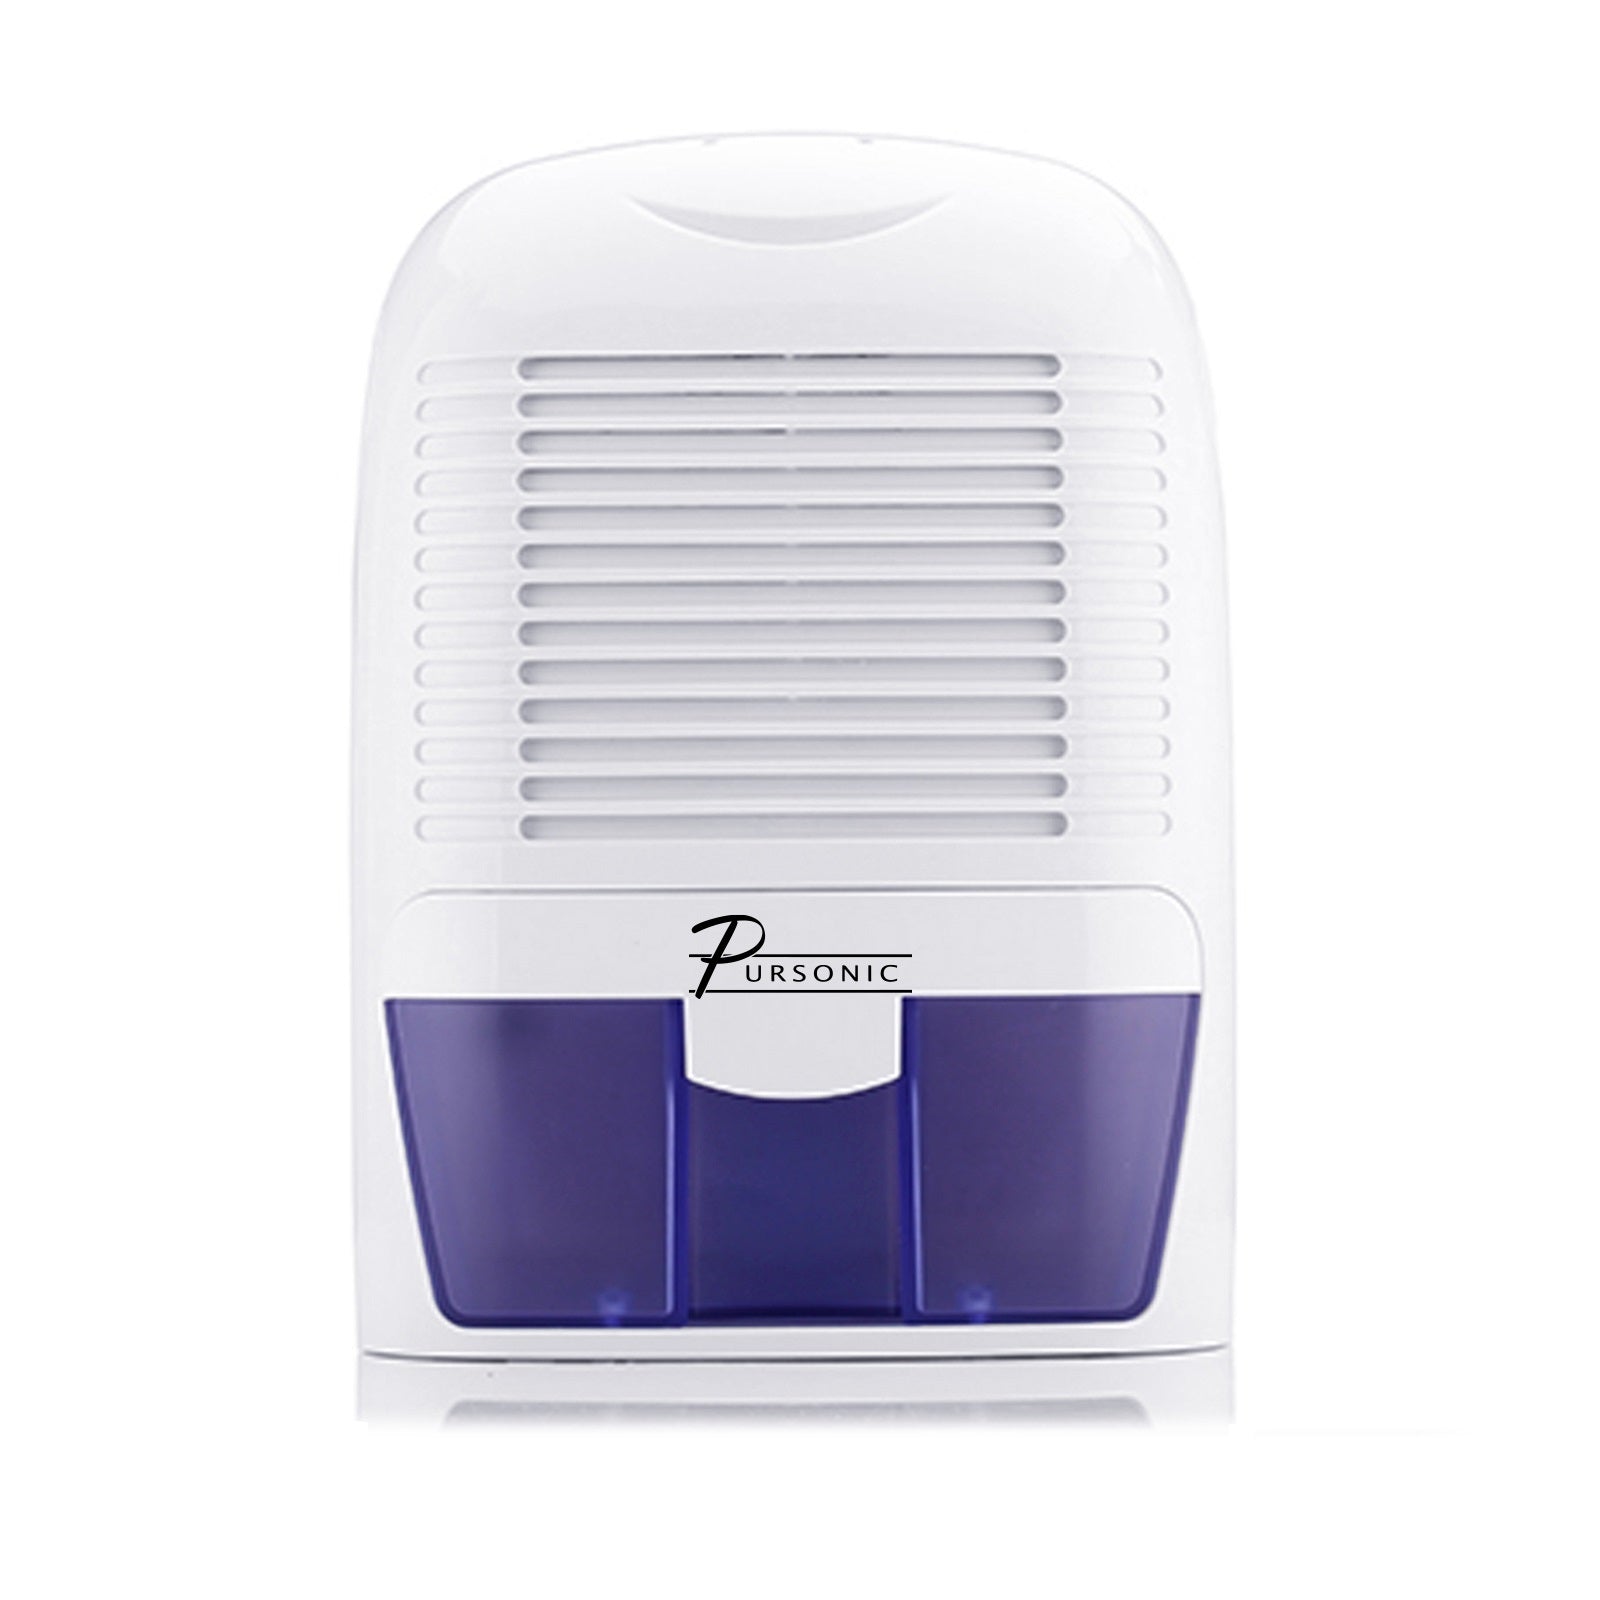 Pursonic Clean Air Max Dehumidifier